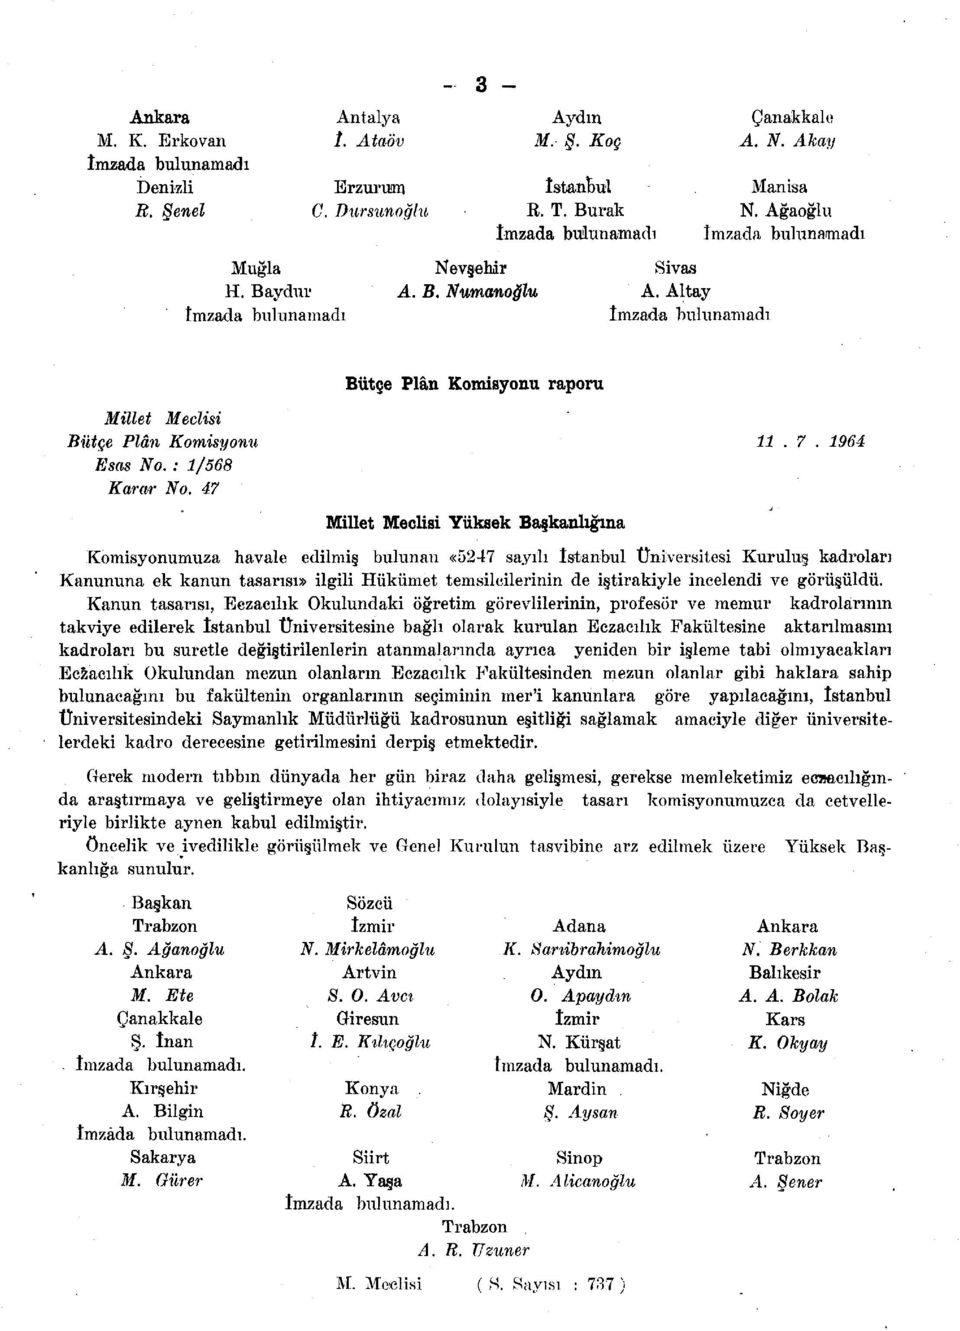 1964 Komisyonumuza havale edilmiş bulunan «5247 sayılı İstanbul Üniversitesi Kuruluş kadroları Kanununa ek kanun tasarısı» ilgili Hükümet temsilcilerinin de iştirakiyle incelendi ve görüşüldü.